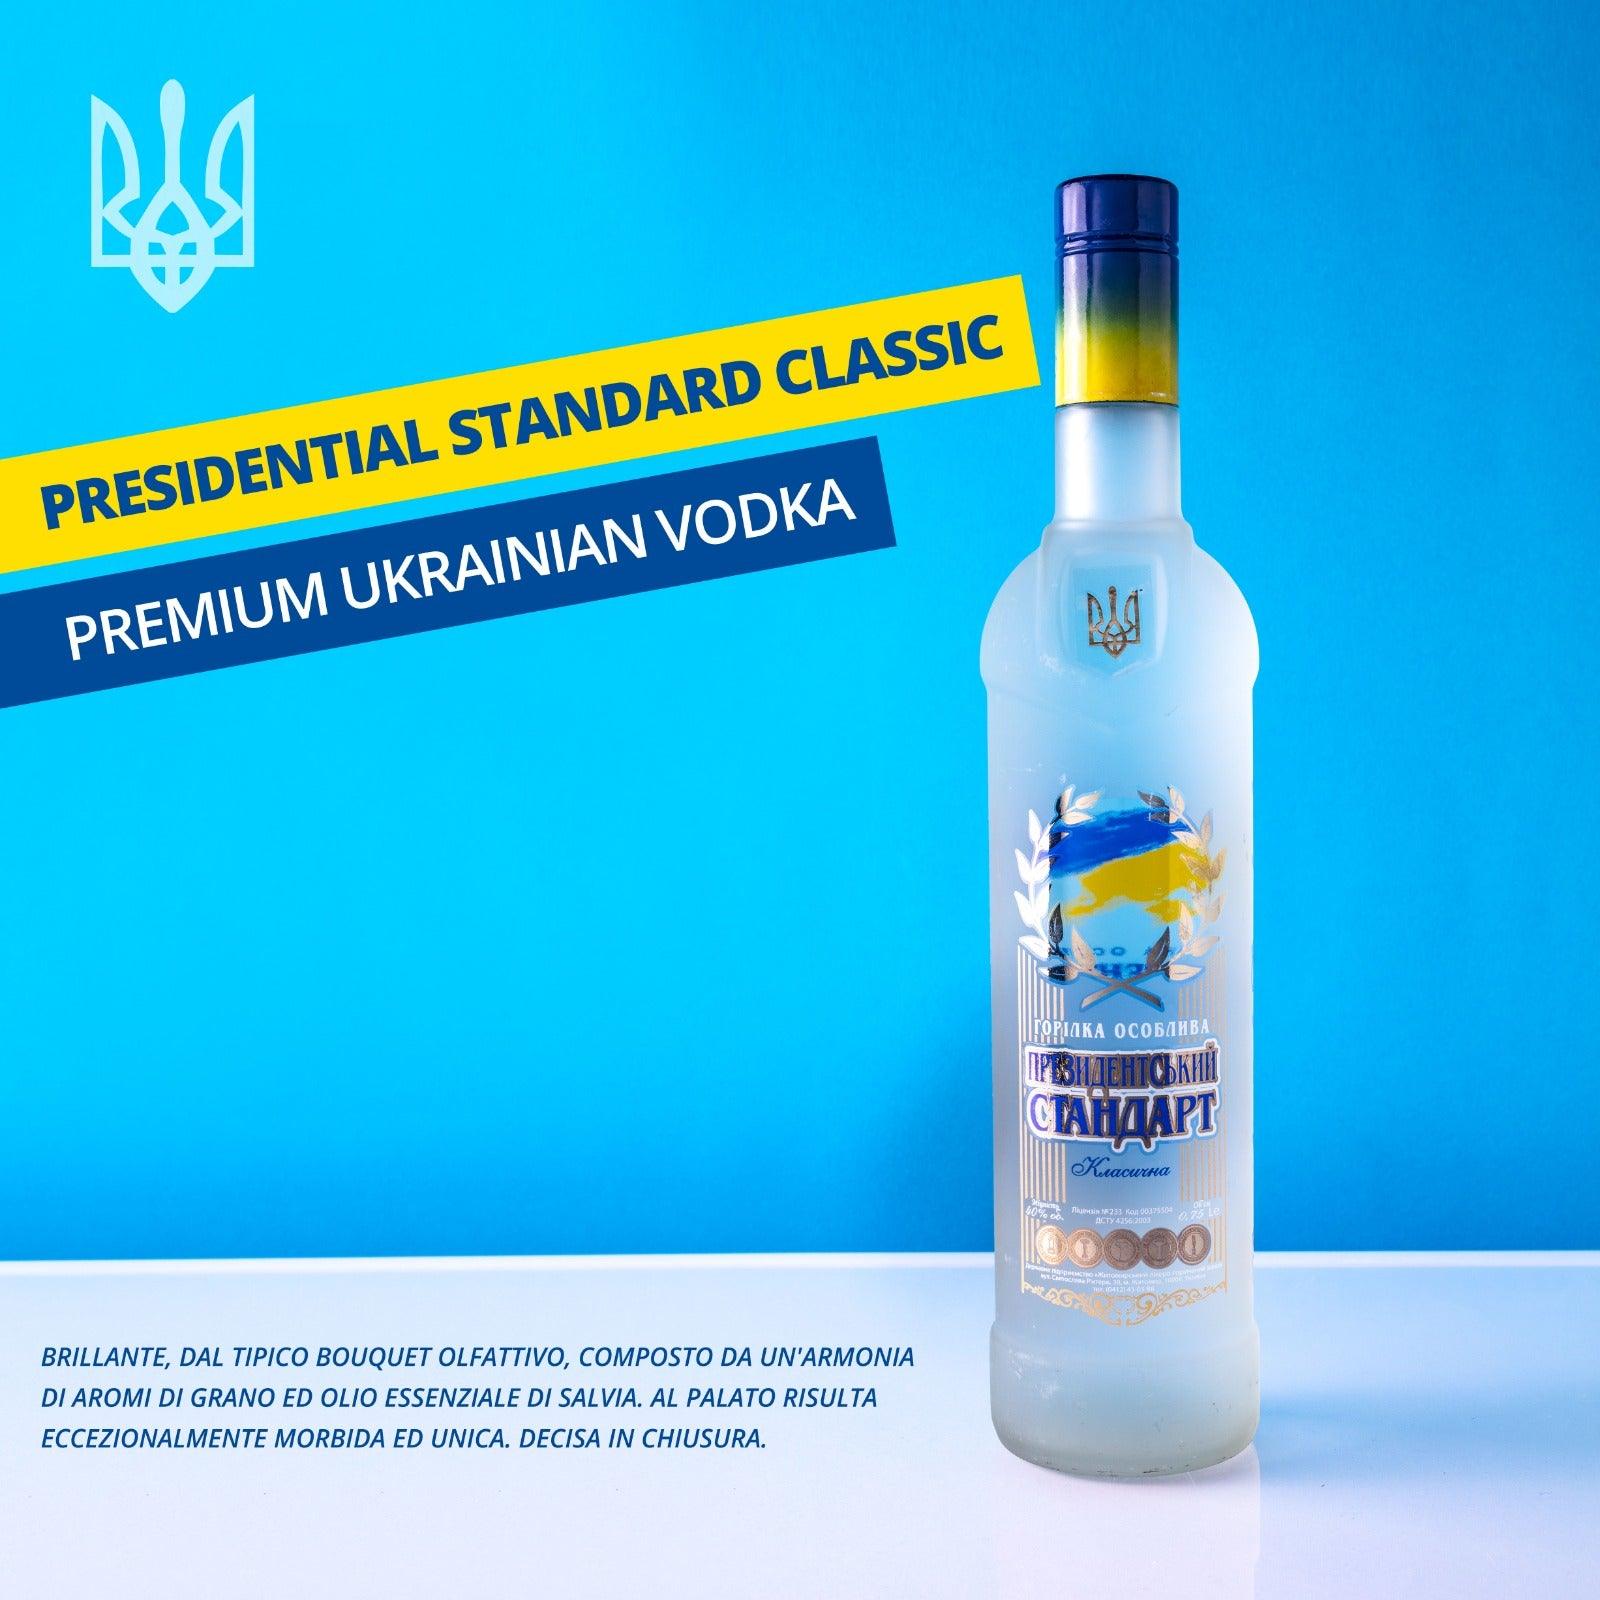 Vodka “Presidential Standart” classic - I migliori prodotti Made in Italy da Fiera Monza e Brianza Shop - Solo 29€! Acquista subito su Fiera di Monza Shop!